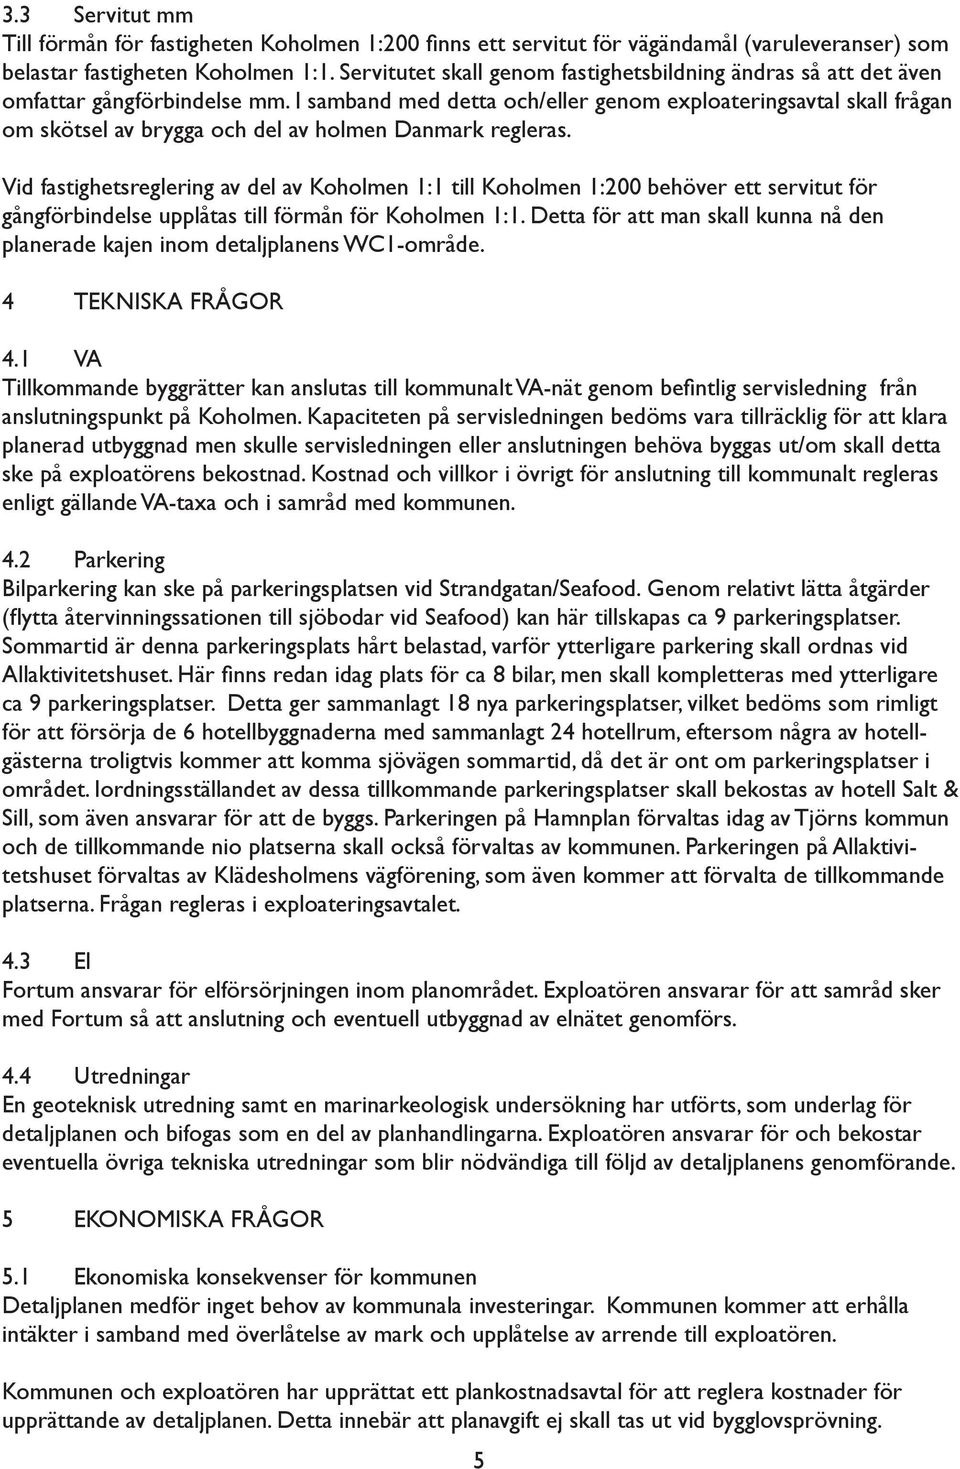 I samband med detta och/eller genom exploateringsavtal skall frågan om skötsel av brygga och del av holmen Danmark regleras.